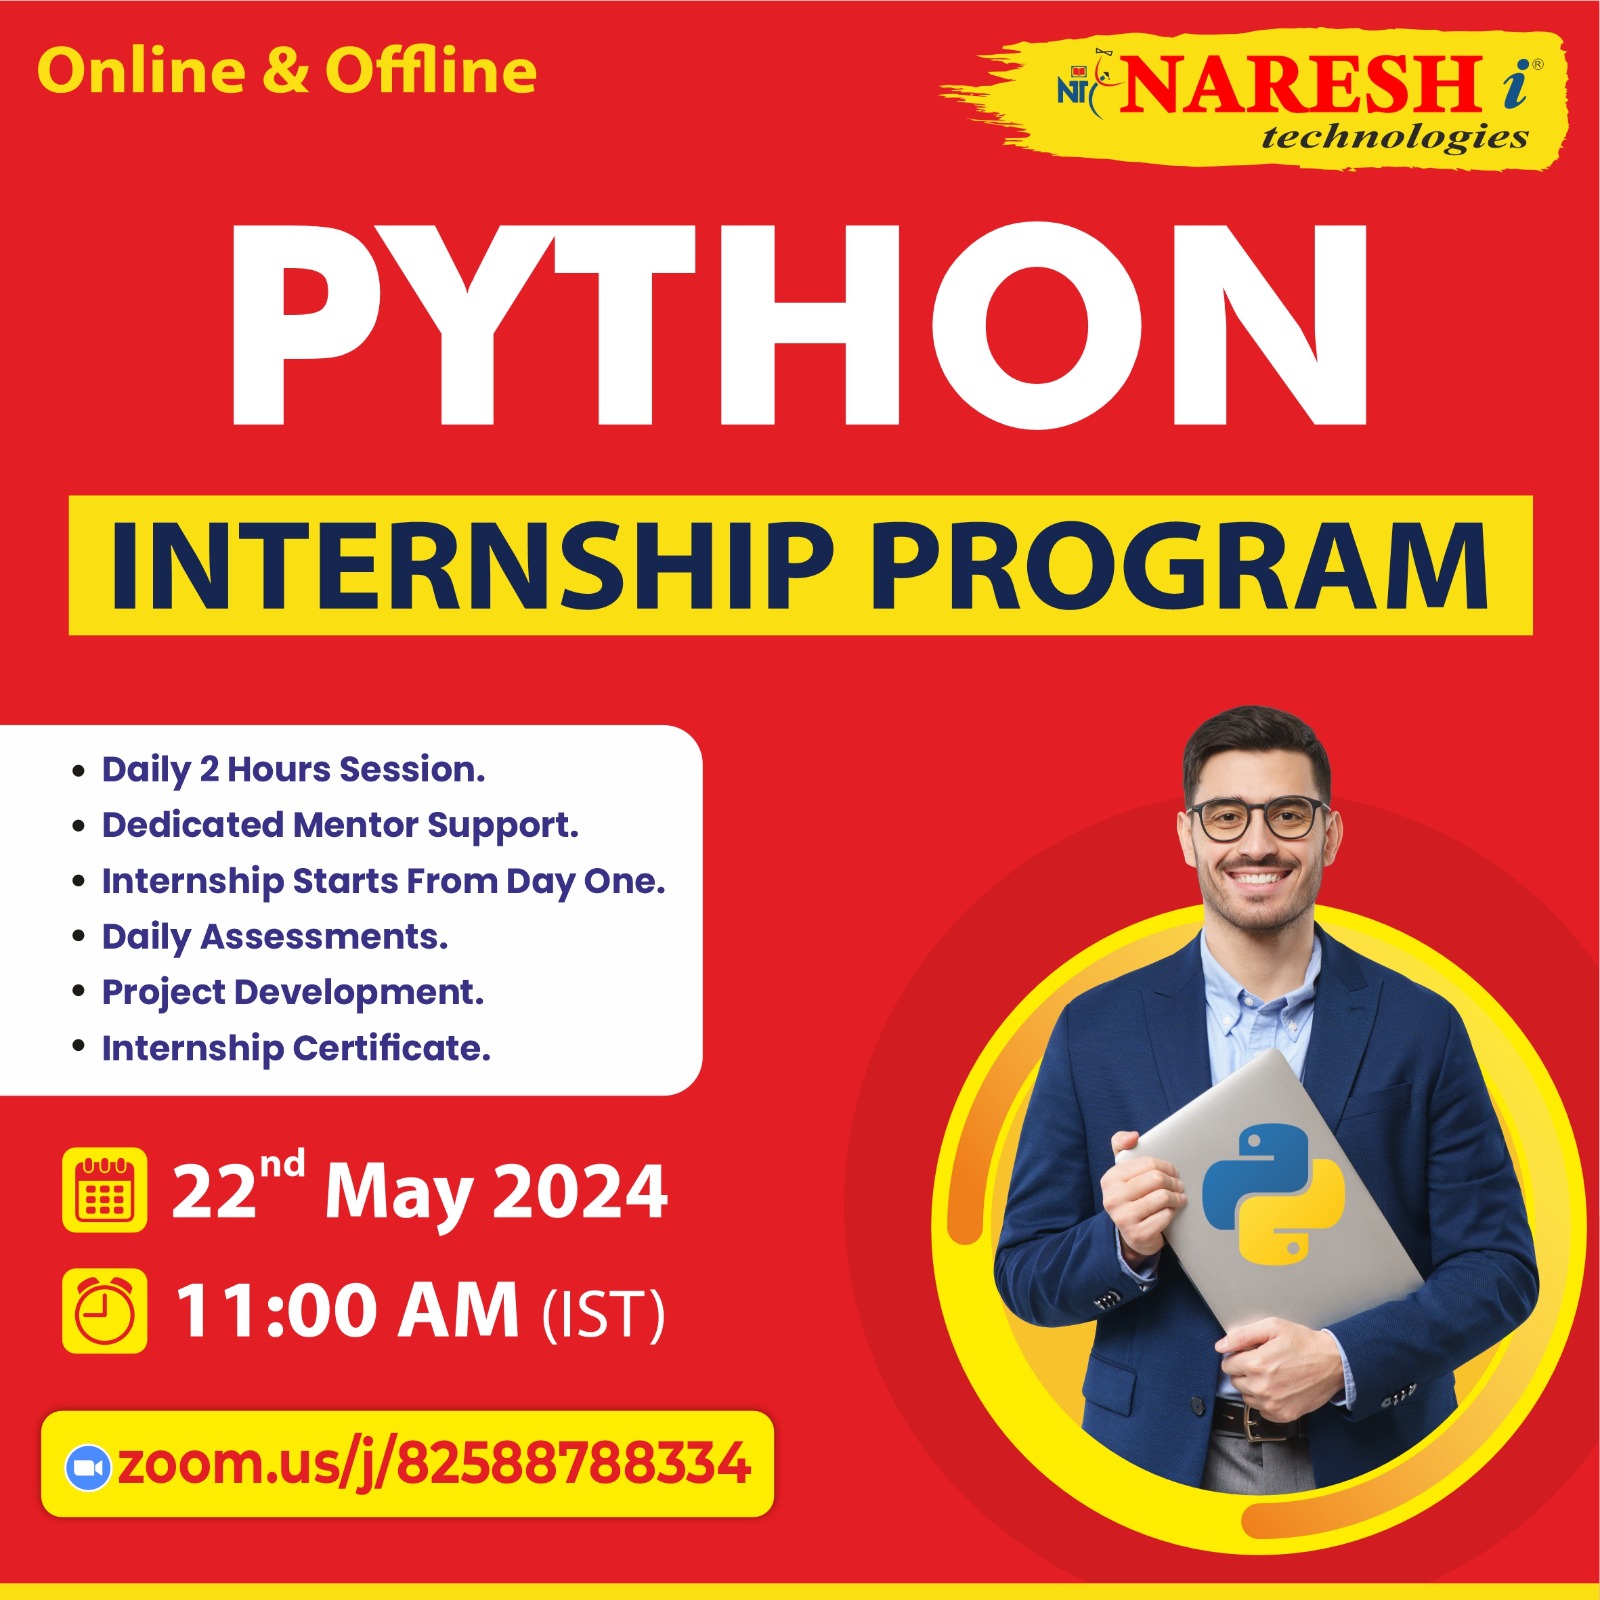 Online & Offline Internship Program on Python, Online Event